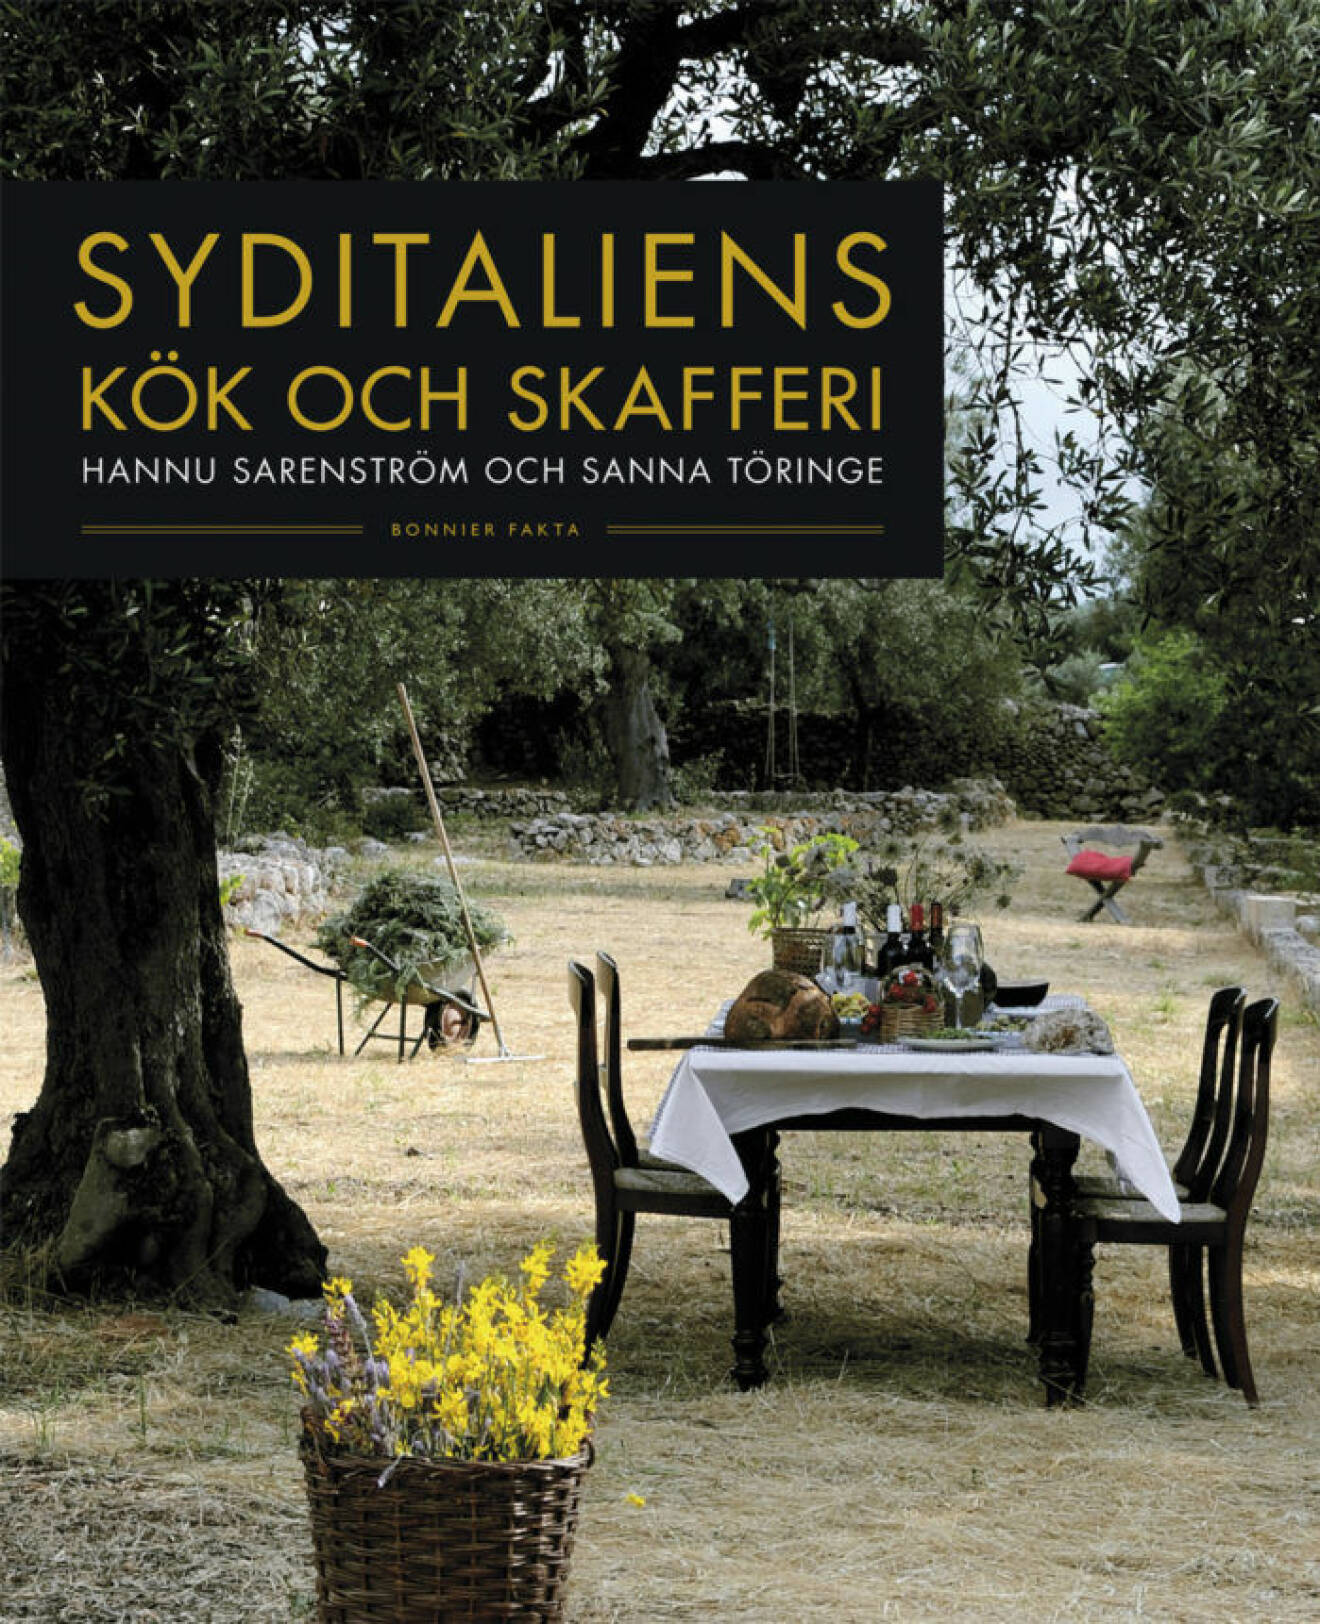 Syditaliens kök och skafferi, av Hannu Sarenström och Sanna Töringe (Bonnier fakta)